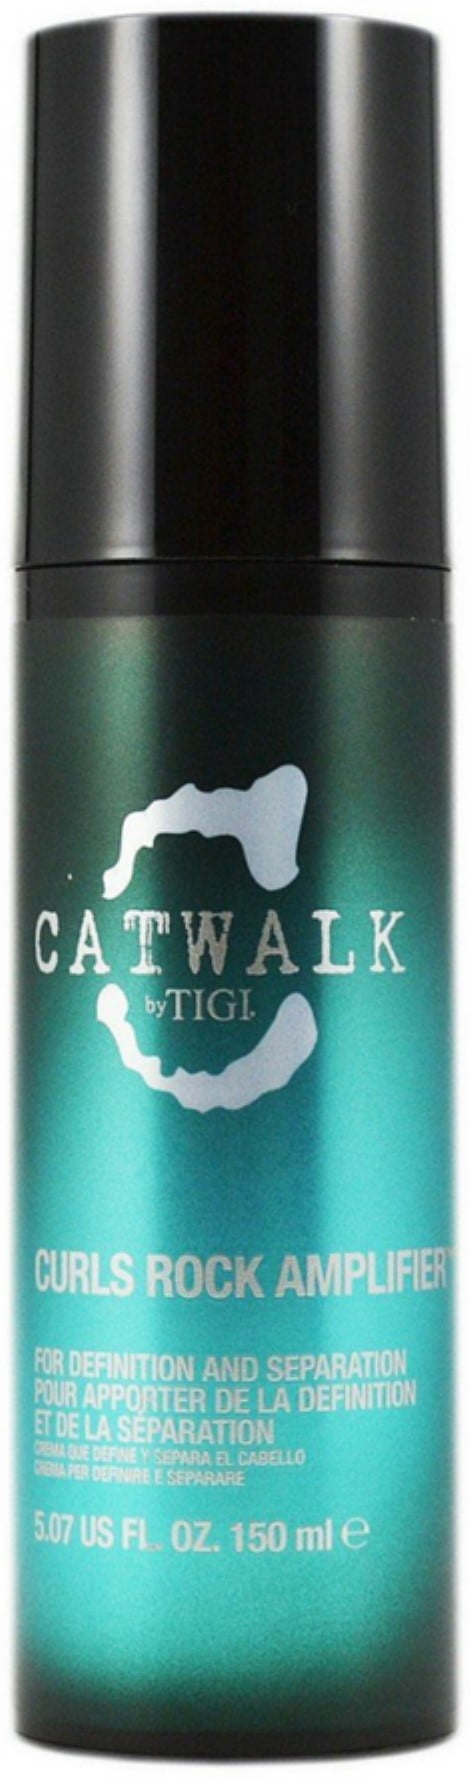 protestantiske dyd overraskelse TIGI Catwalk Curls Rock Amplifier, 5.07 oz - Walmart.com